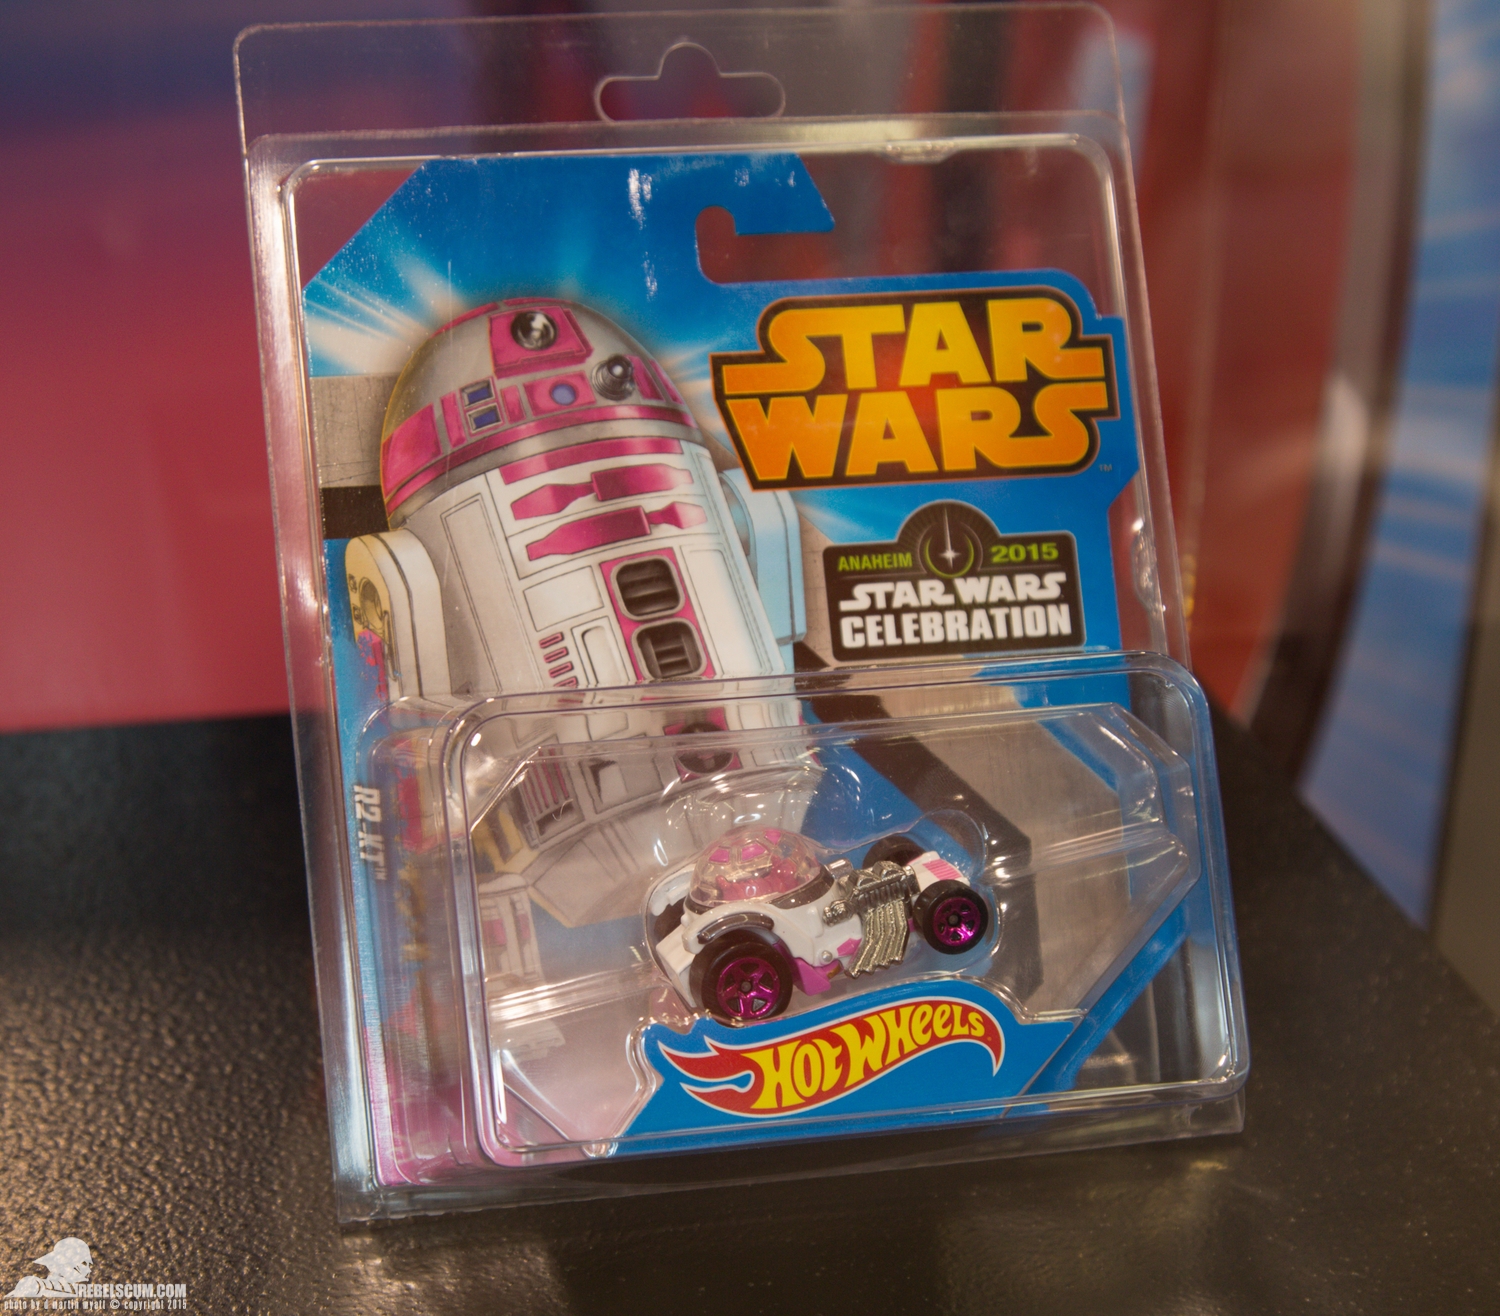 Star-Wars-Celebration-Anaheim-2015-Mattel-Hot-Wheels-002.jpg